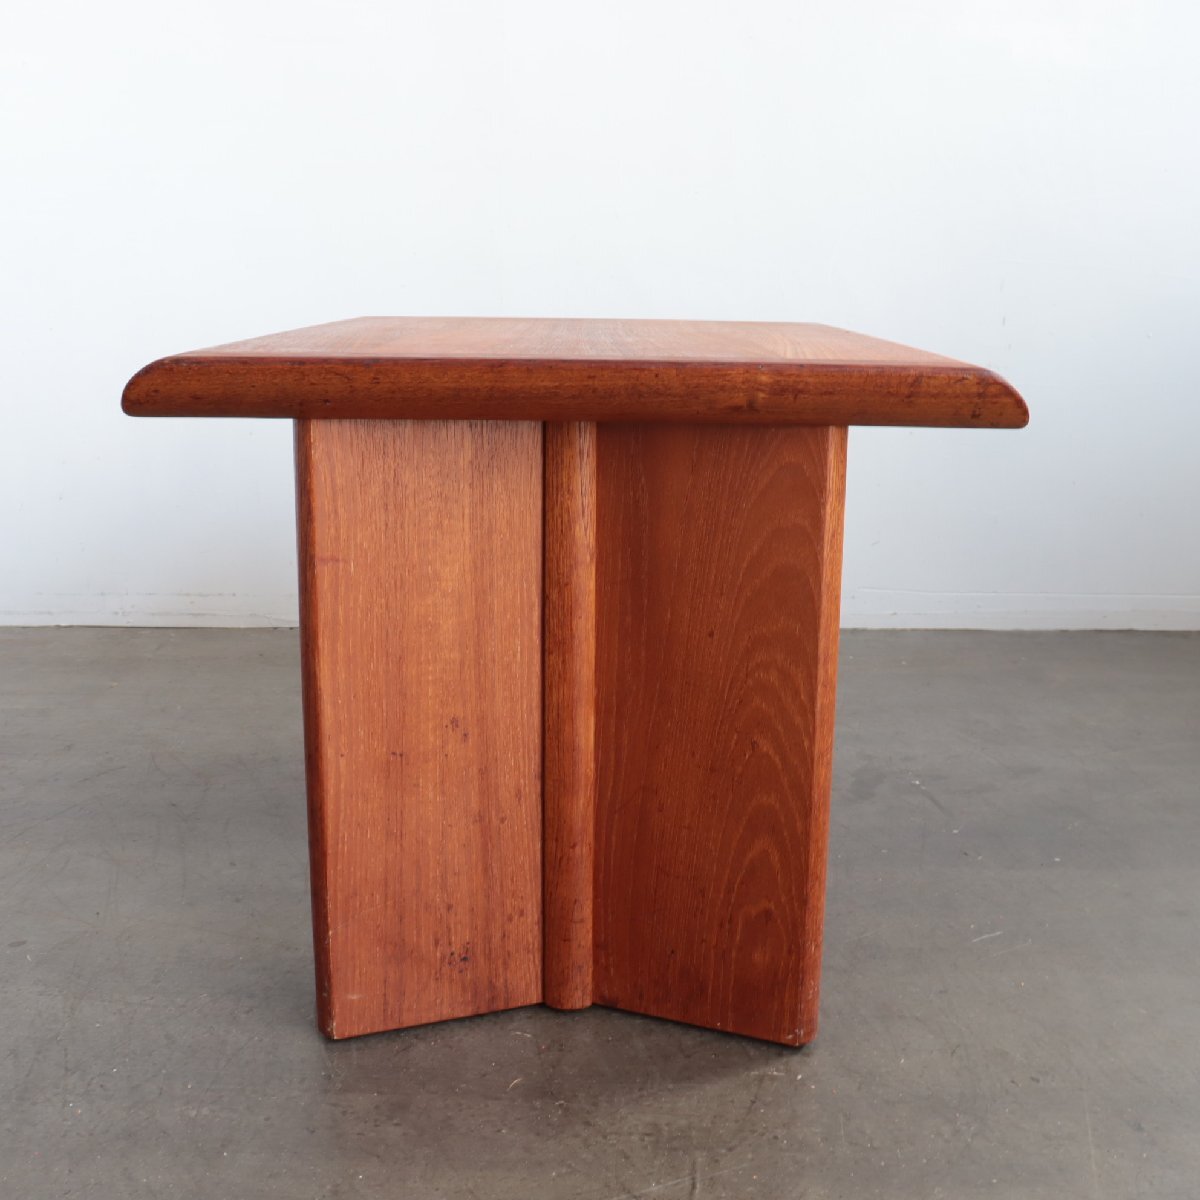 60s Nordic Furniture チーク コーヒーテーブル【#4380】アメリカ ミッドセンチュリー 家具 インテリア ヴィンテージ サイドテーブル